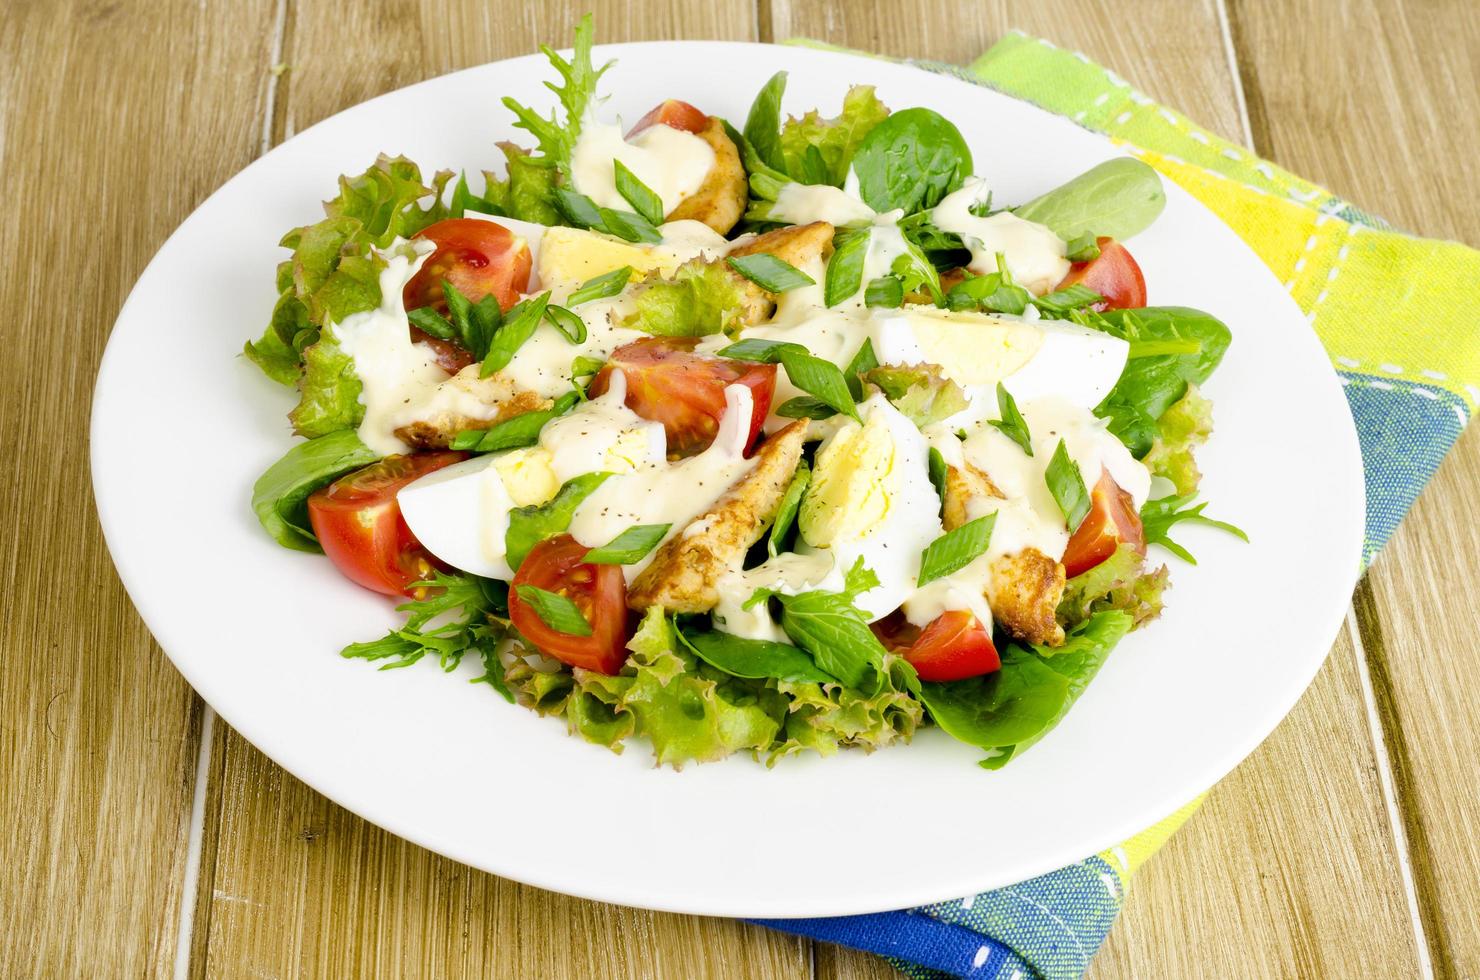 salade van verse groenten, eieren, kippenvlees met witte saus. foto